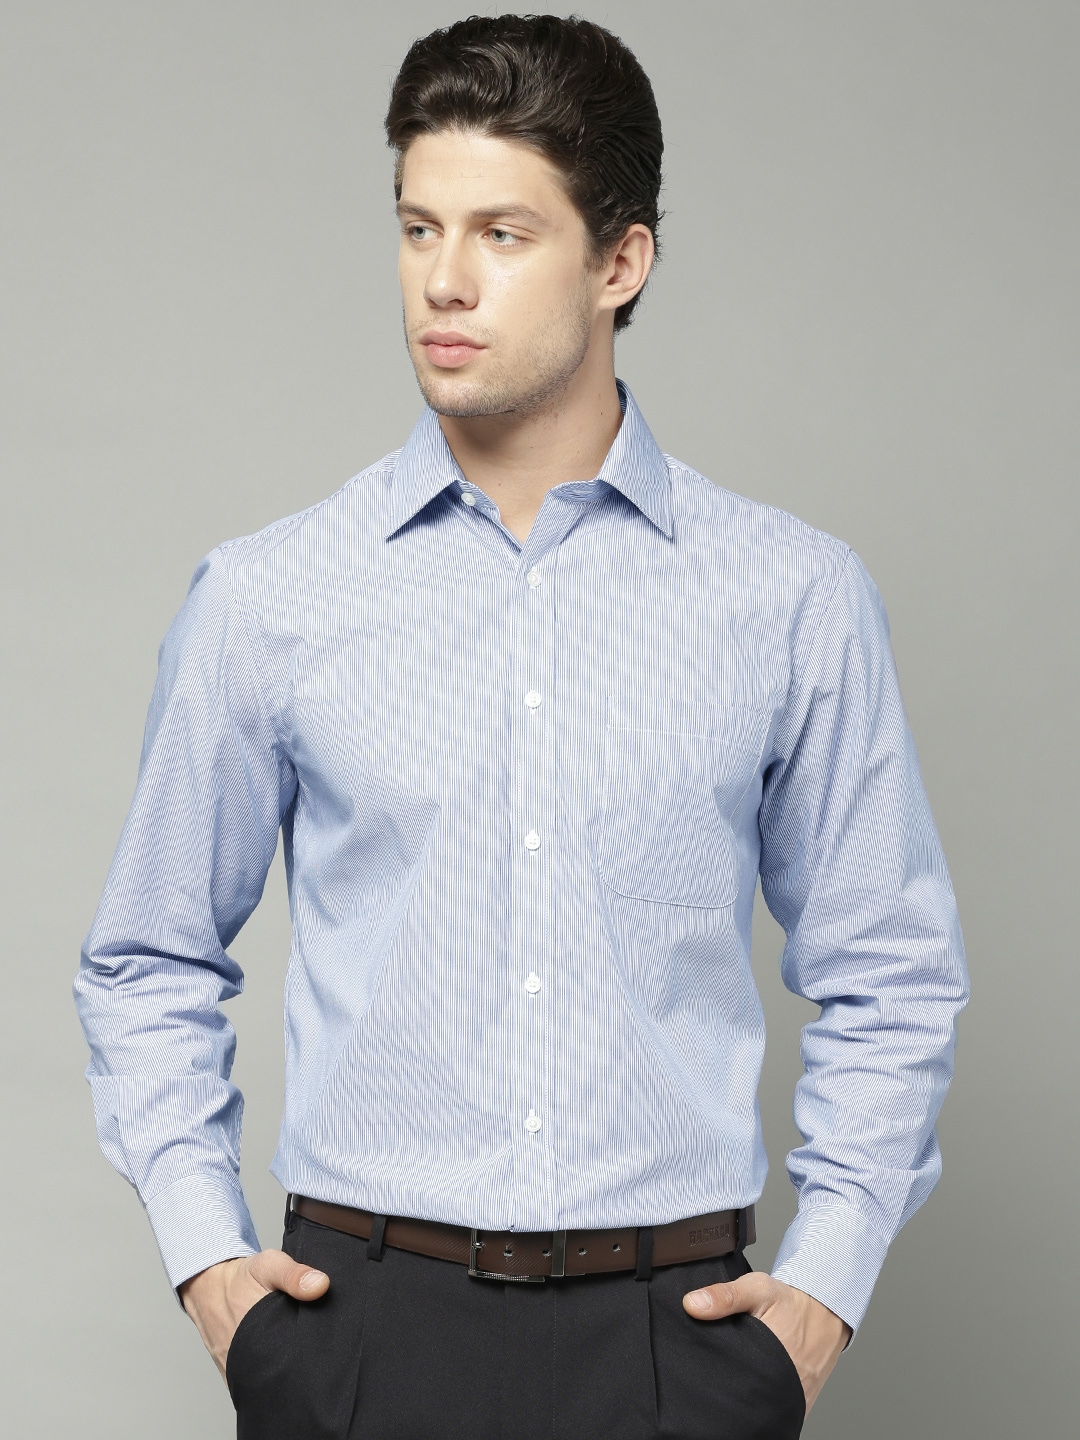 Buy Marks & Spencer Blue Striped Formal Shirt - Shirts for Men 1748699 ...